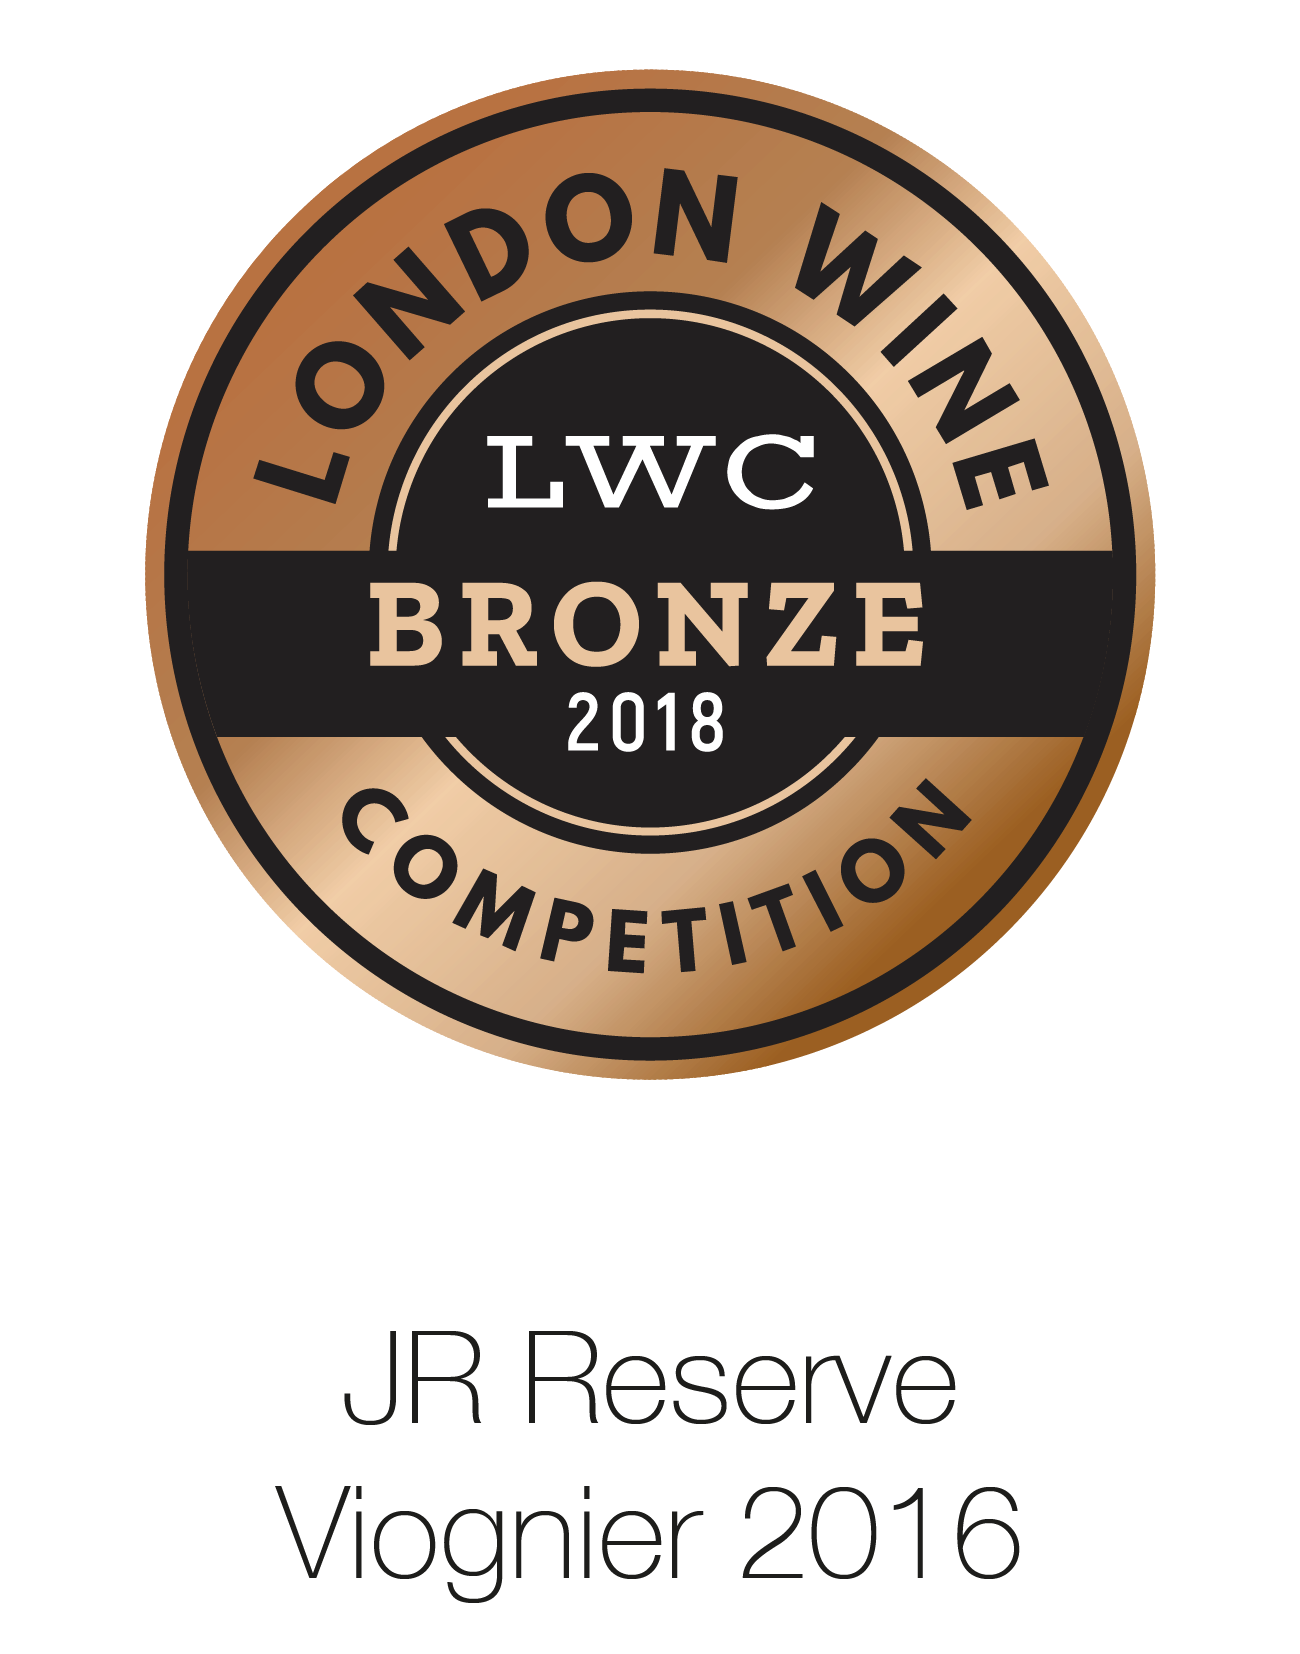 JR Reserve - Viognier 2016 - London Wine Competition 2018